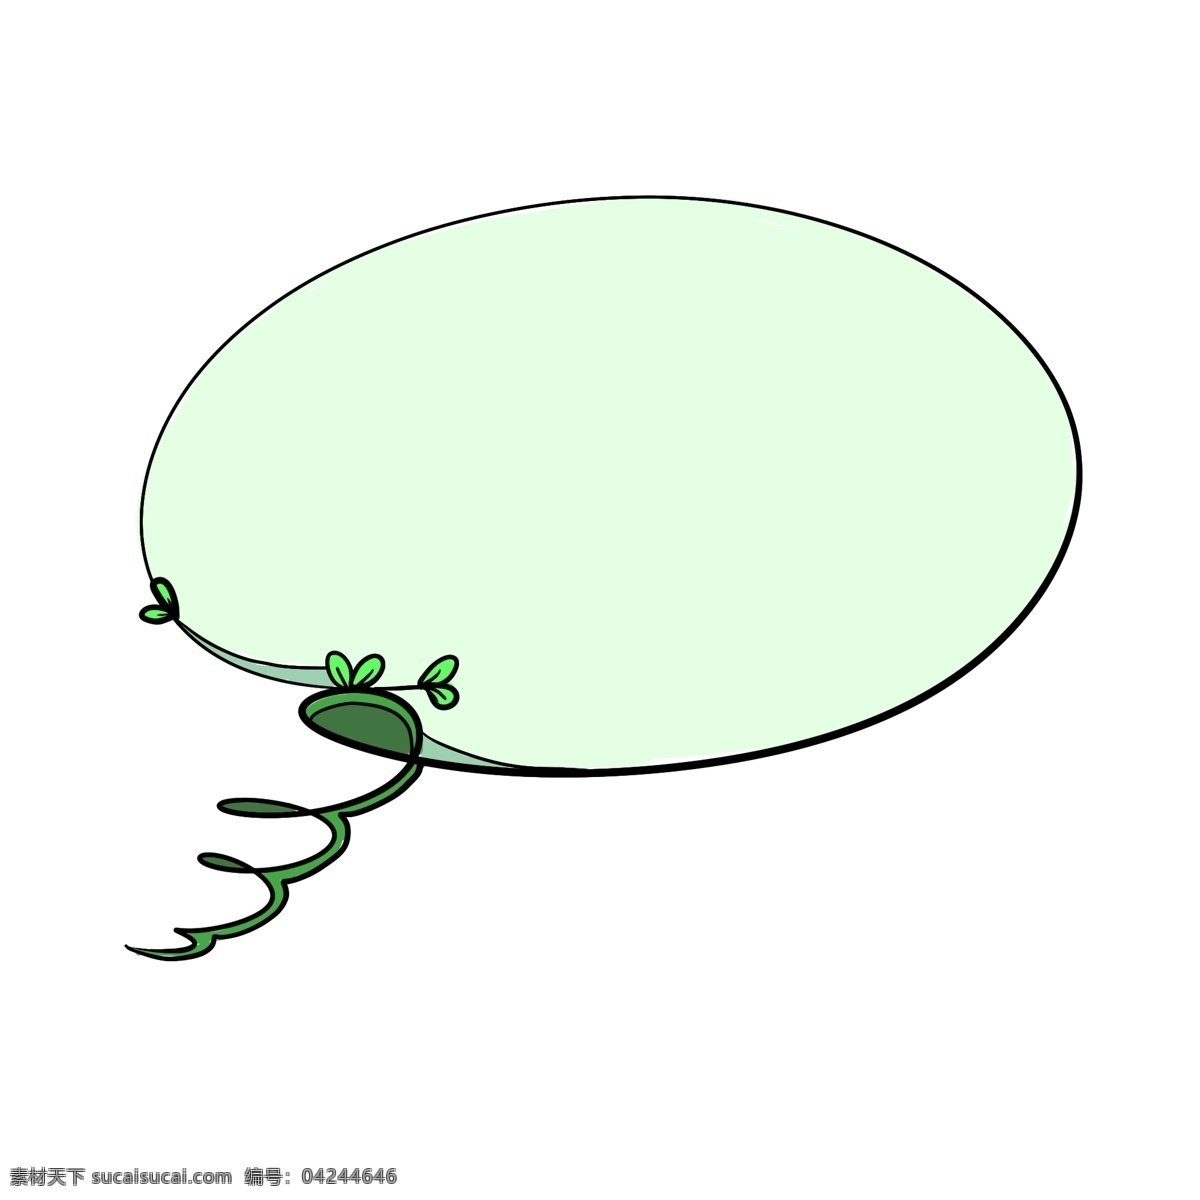 绿色 藤蔓 图案 对话框 清晰 简洁 简单 叶子 缠绕 手绘 卡通 实用 淡绿色 清雅 边框